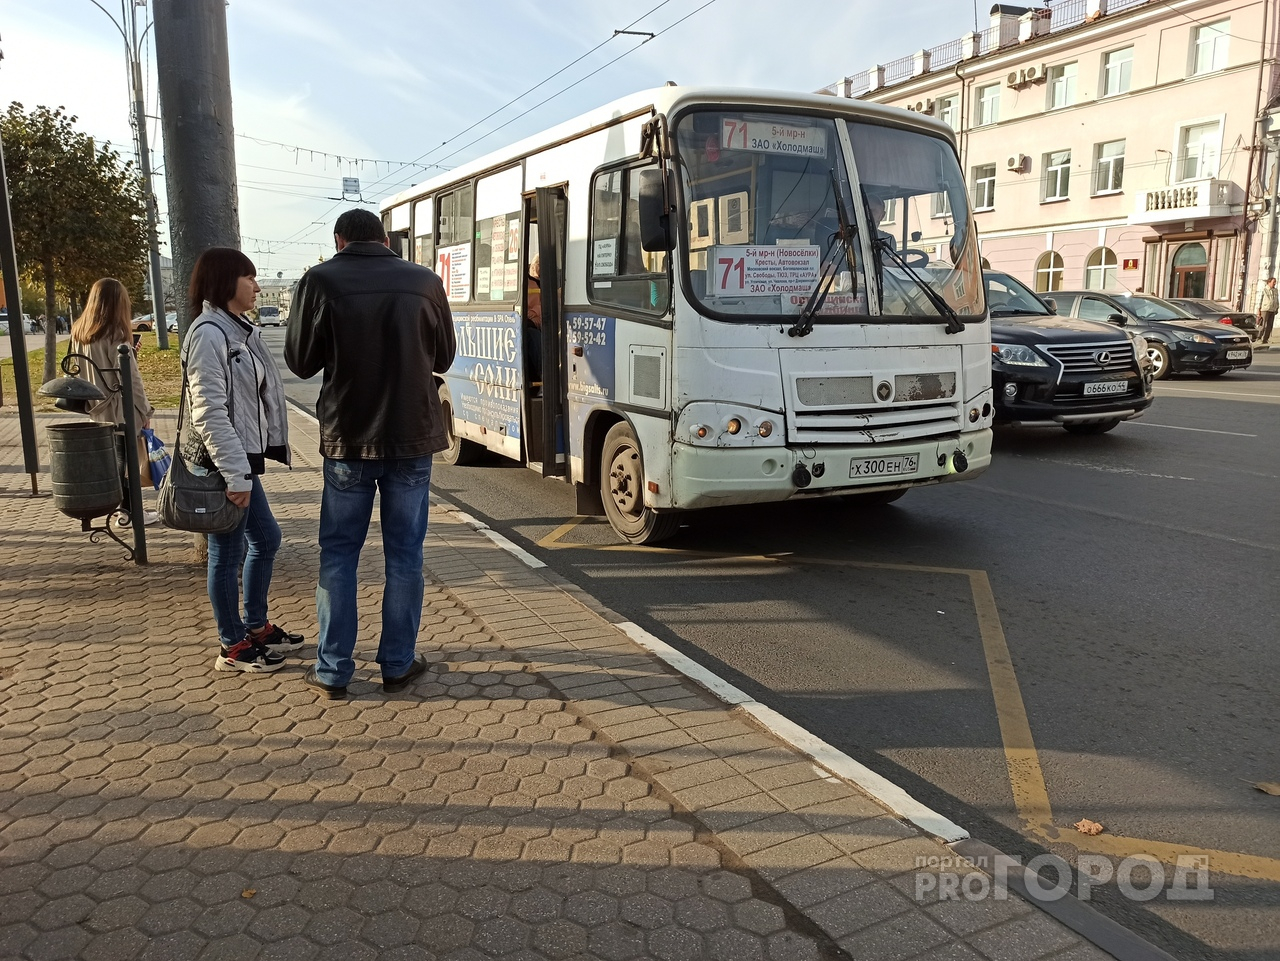 Массовая забастовка маршрутчиков в Ярославле: как отреагировали власти